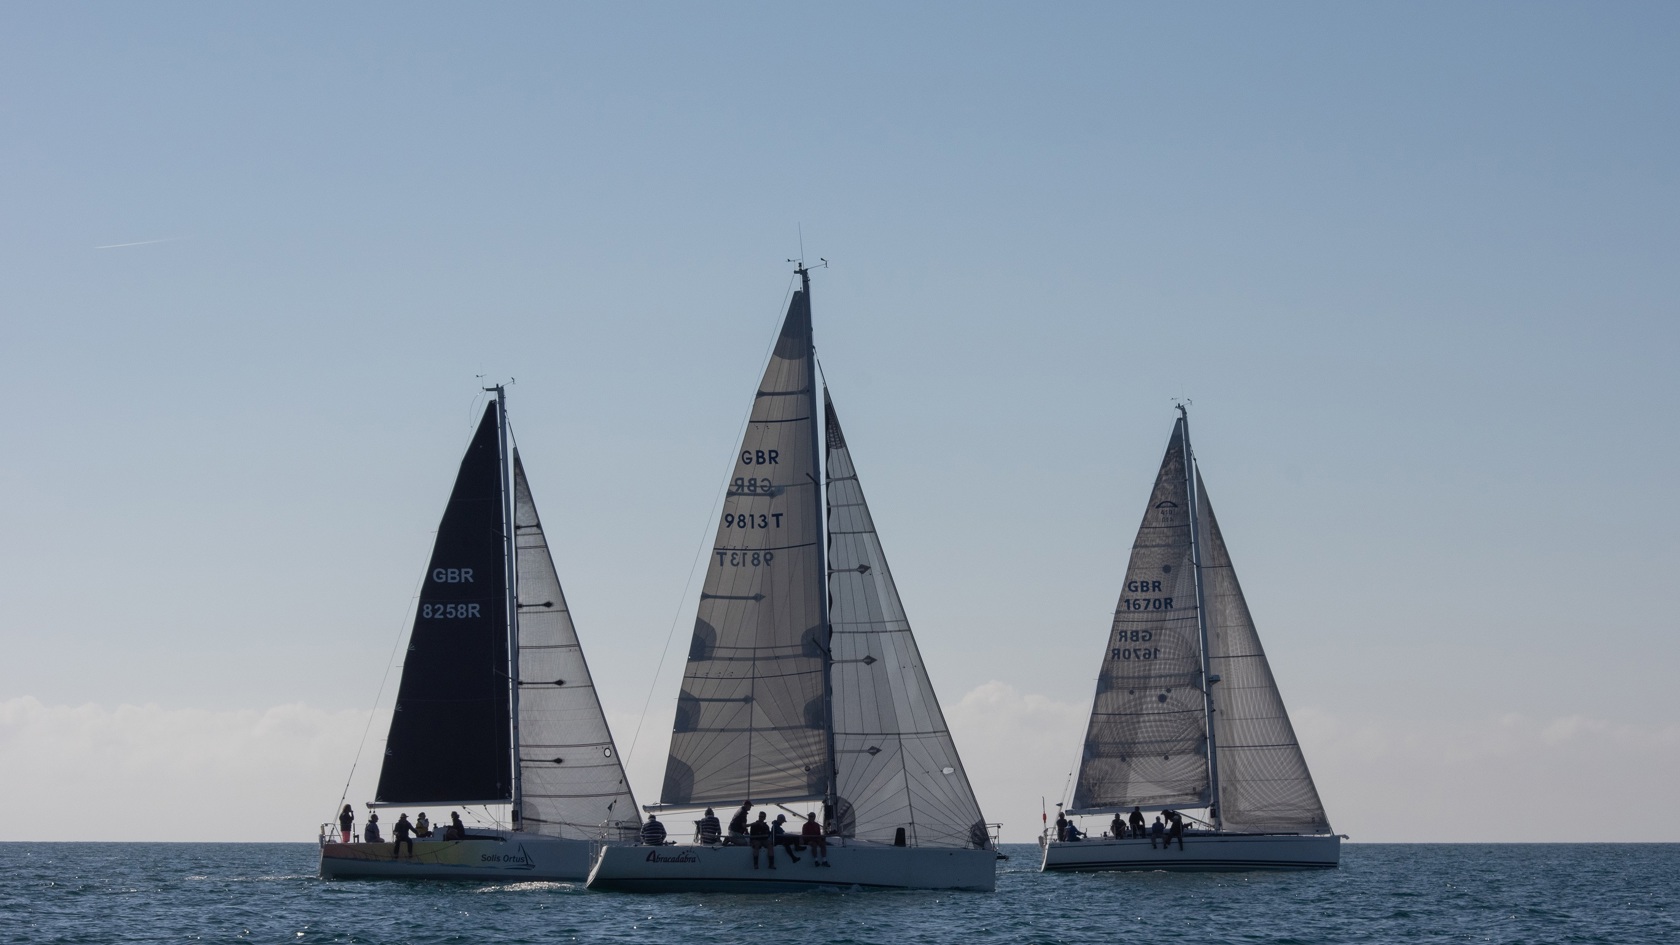 Three sailing boats racing